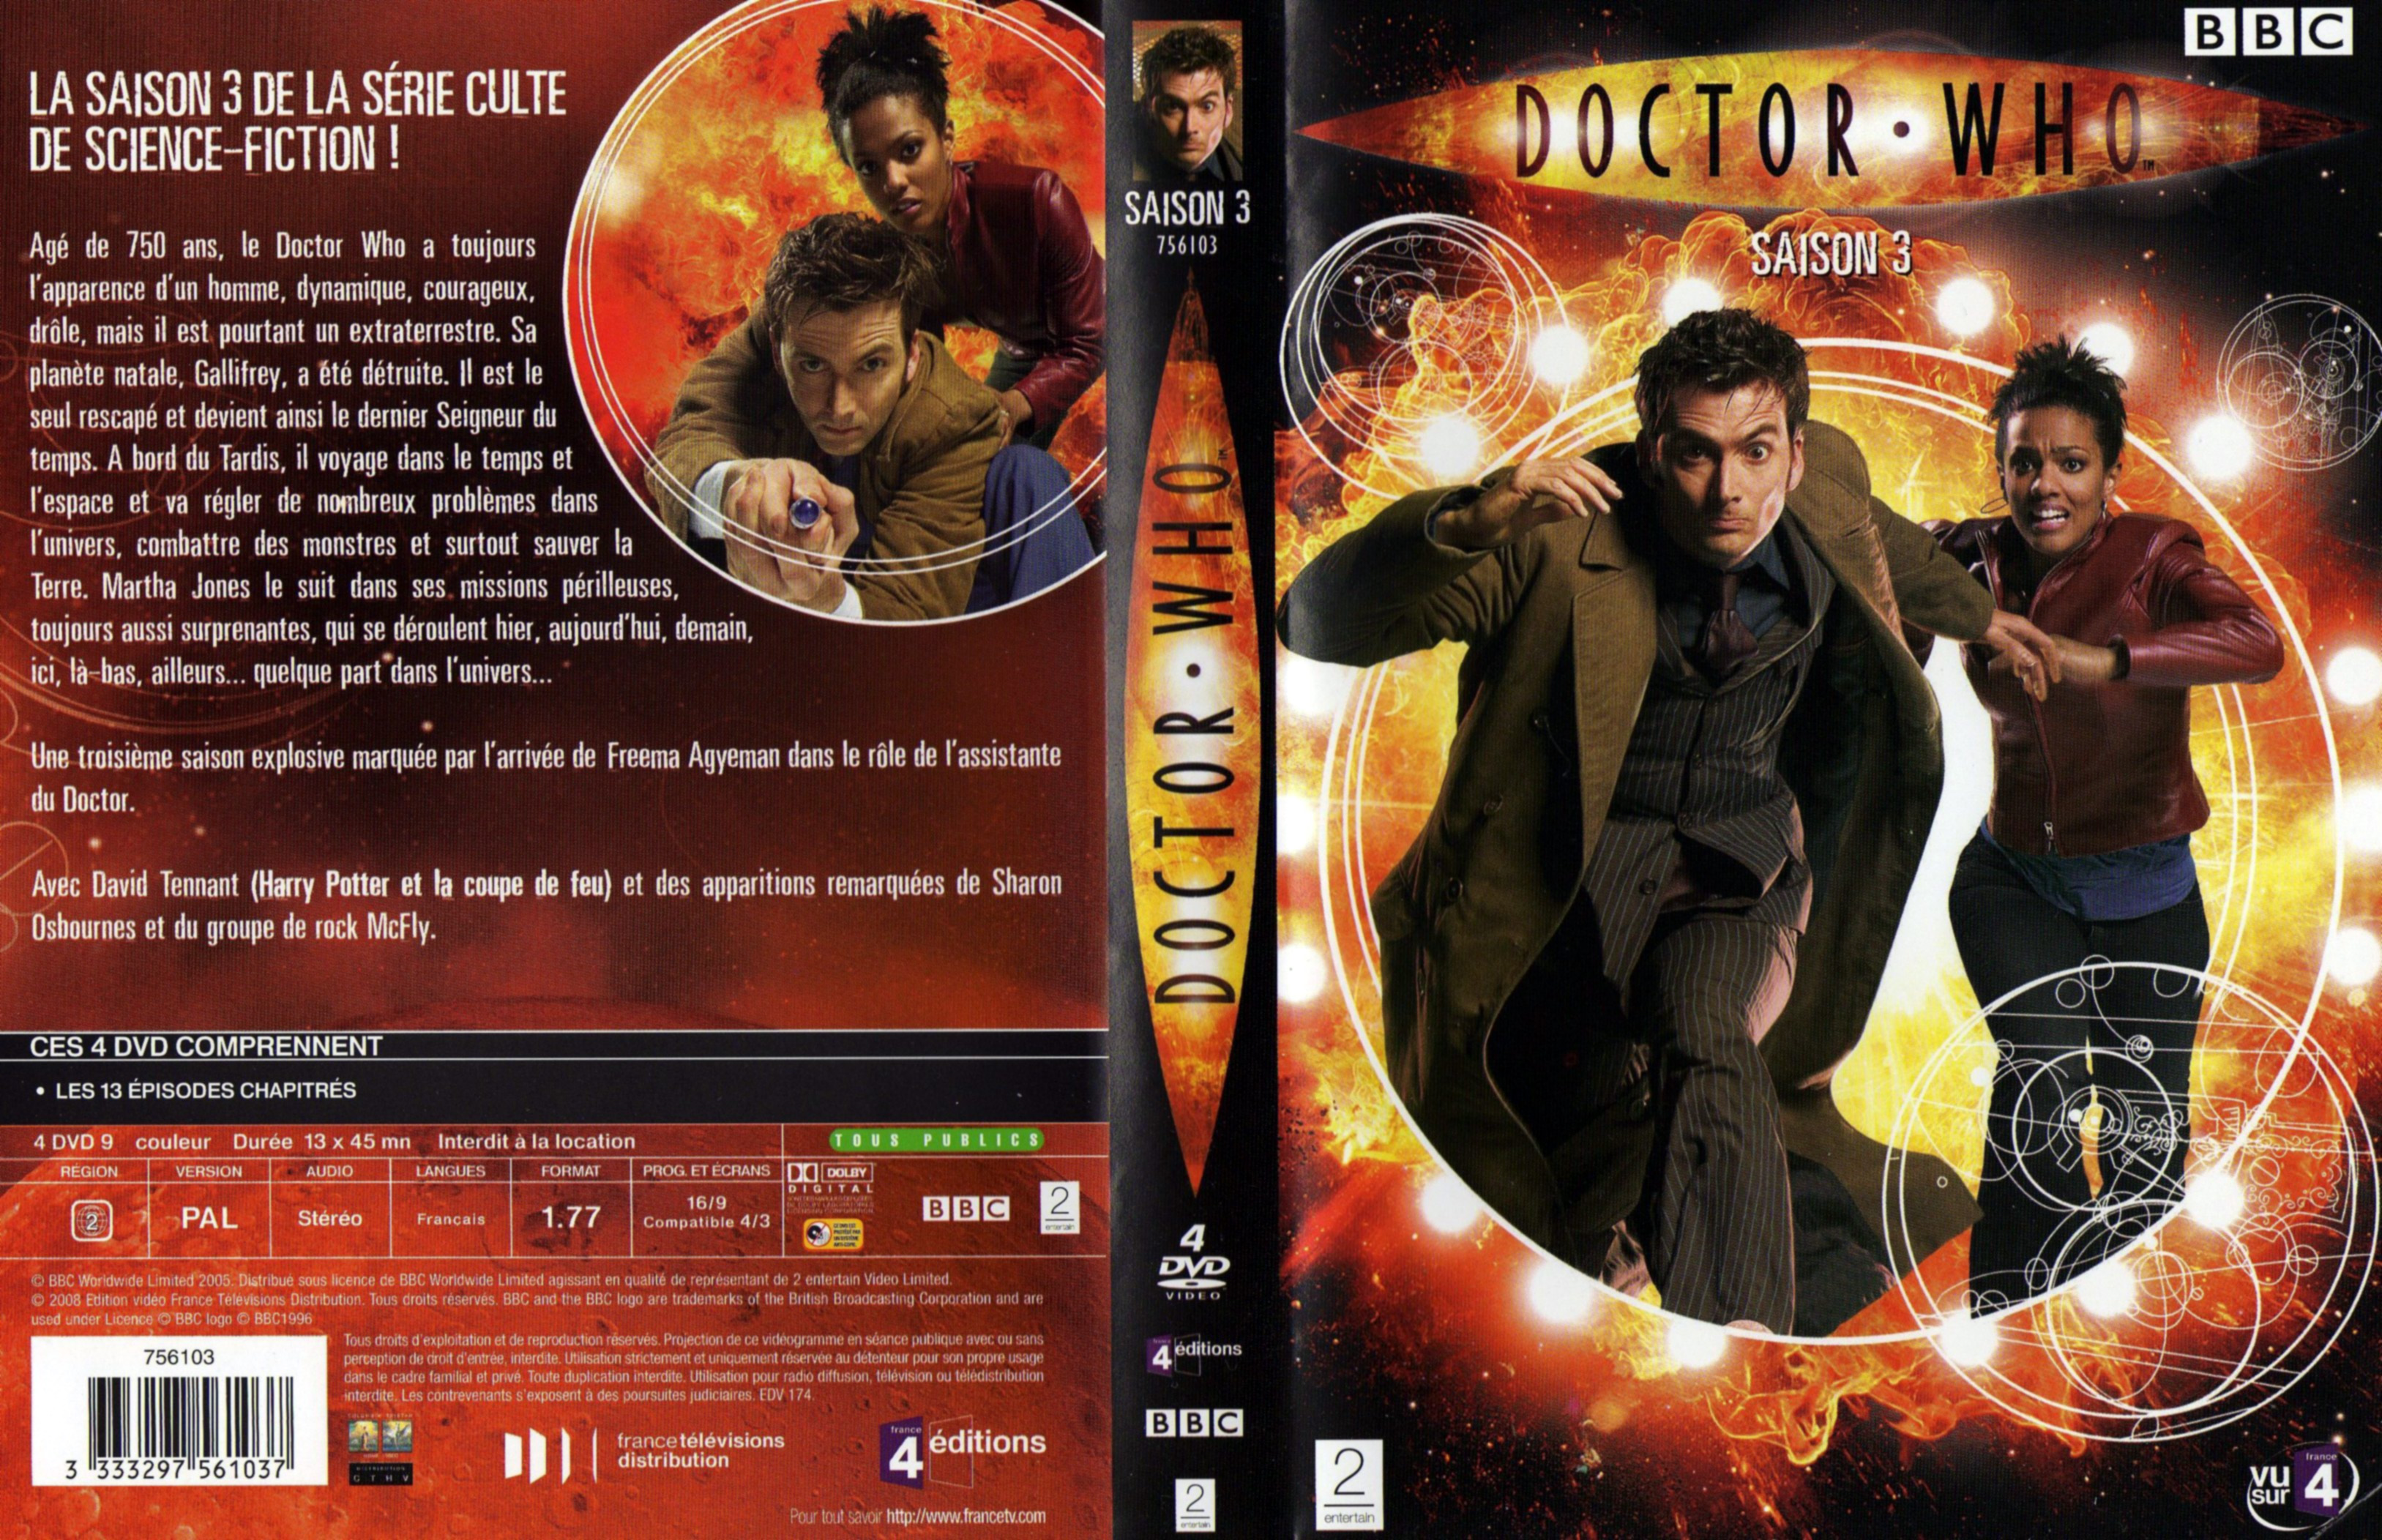 Jaquette DVD Doctor Who Saison 3 COFFRET